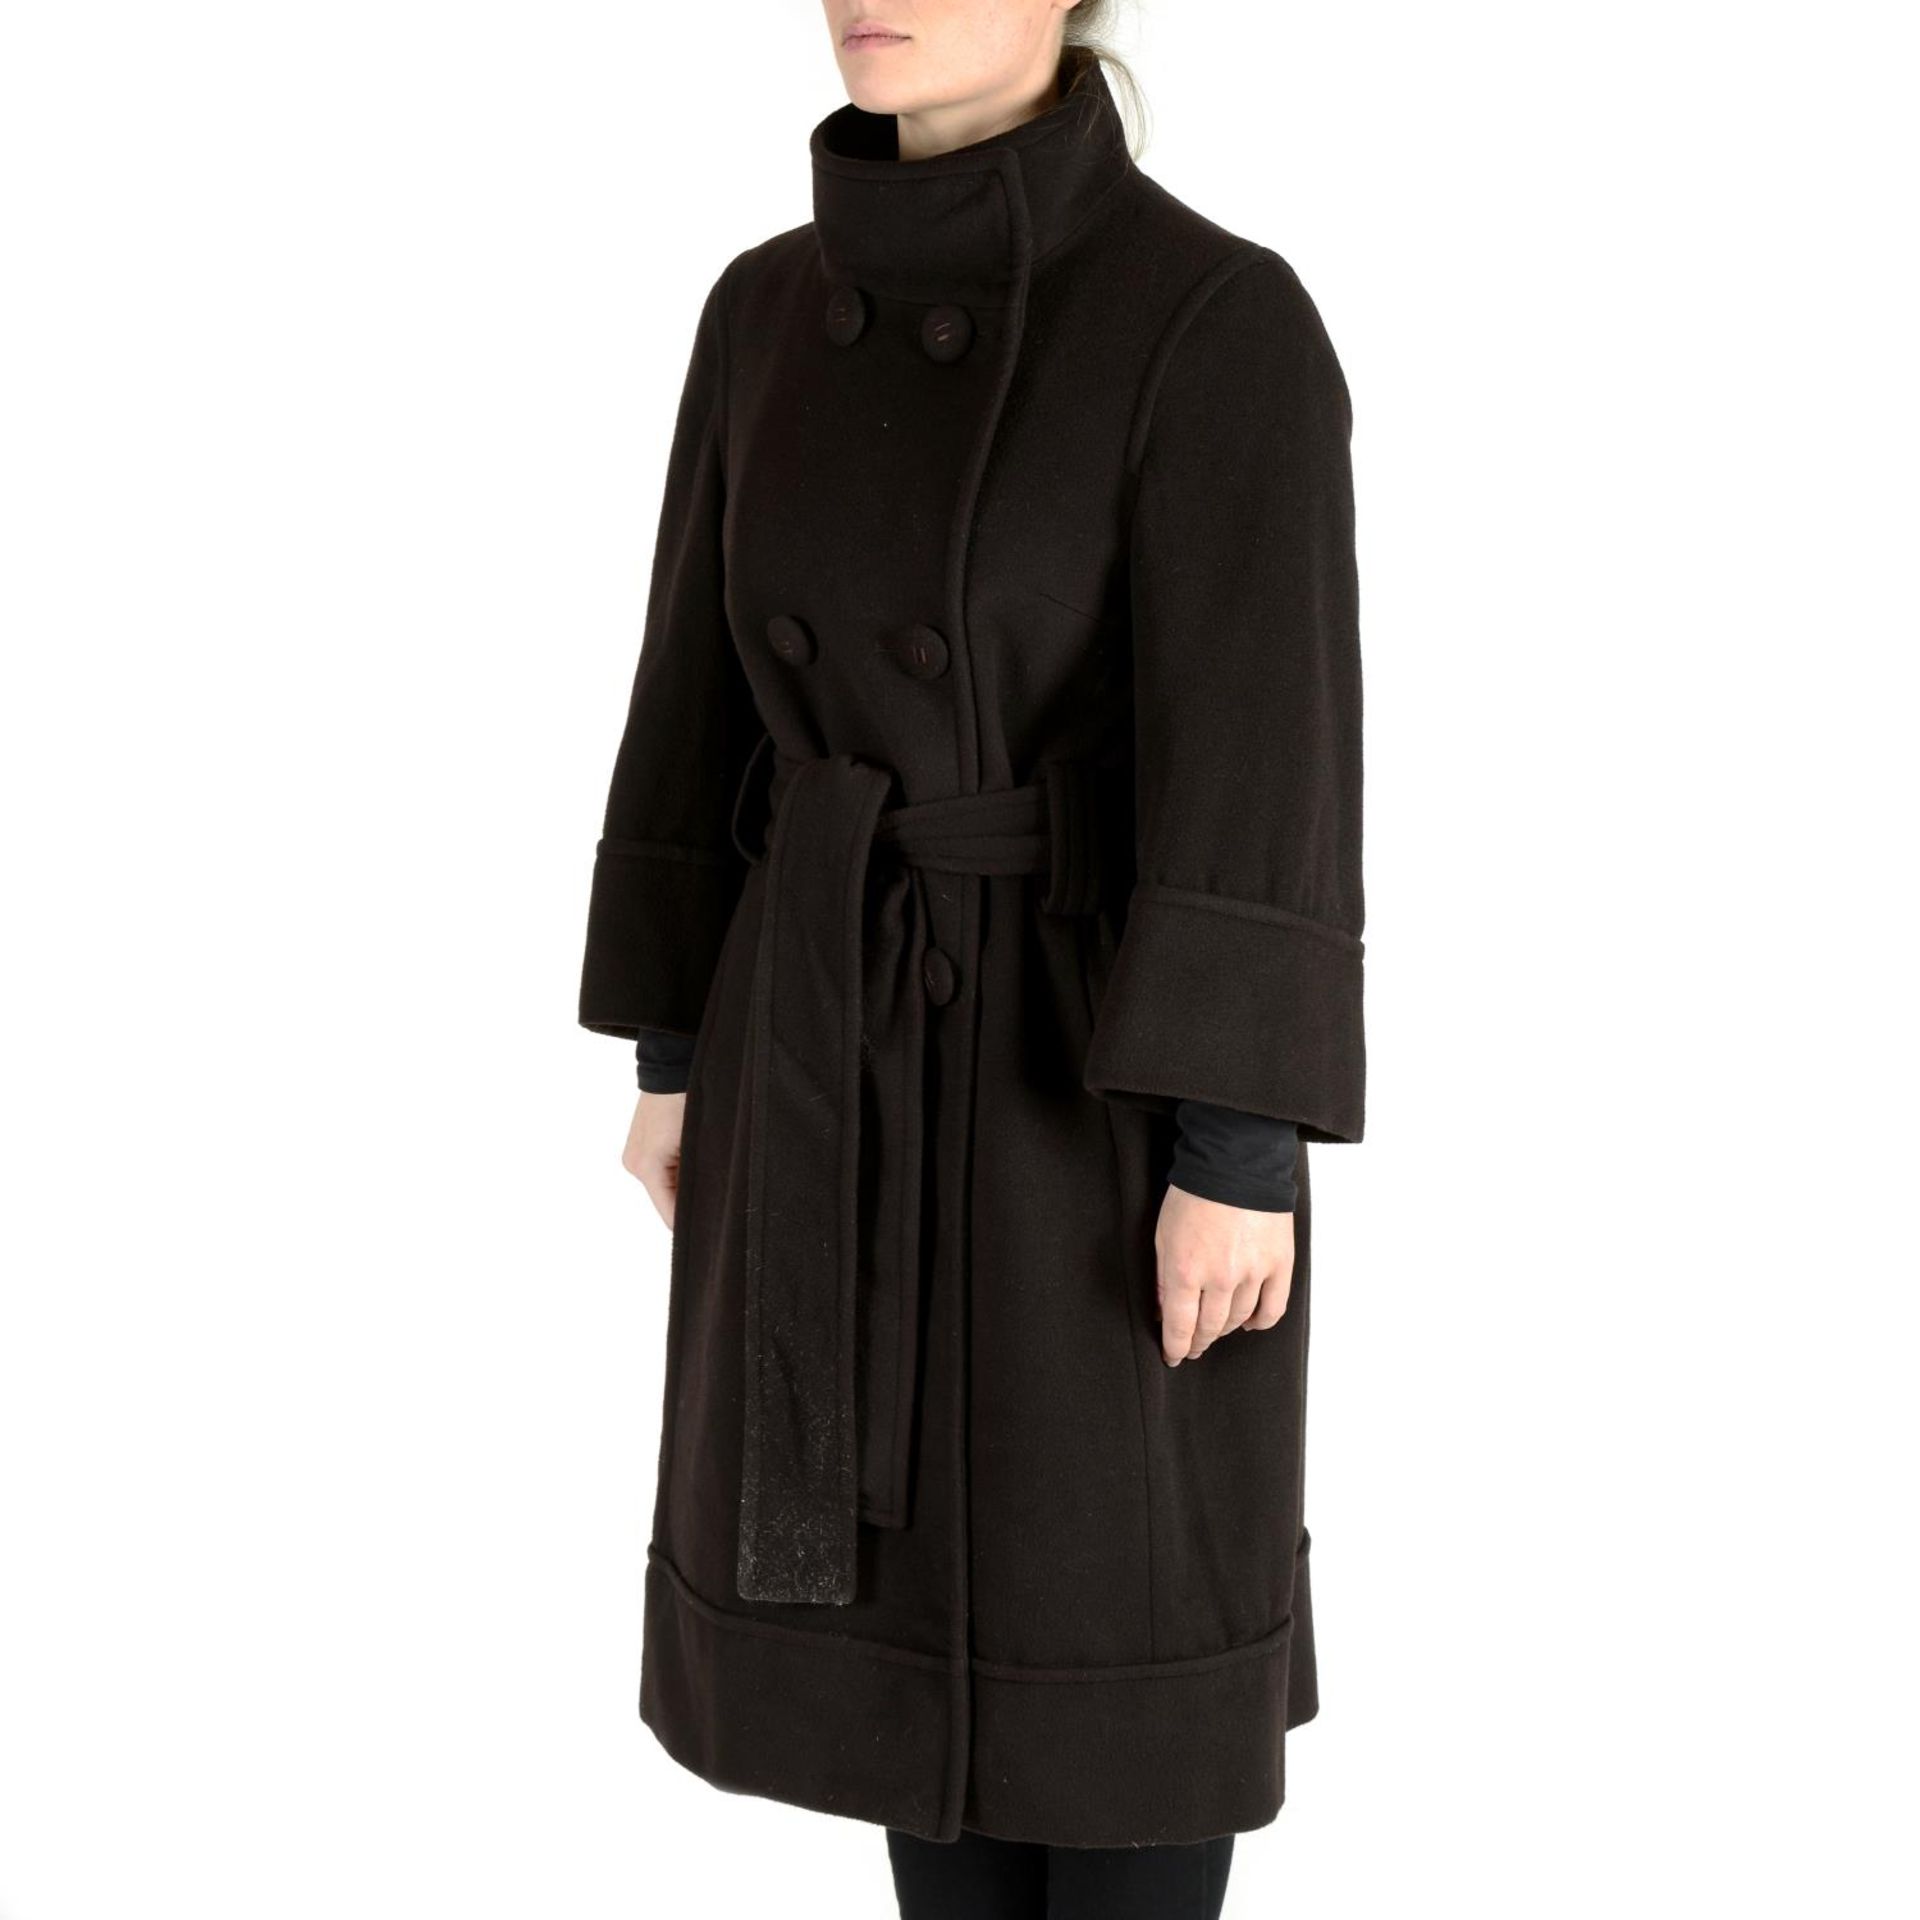 CAROLINA HERRERA - a coat and two jackets.